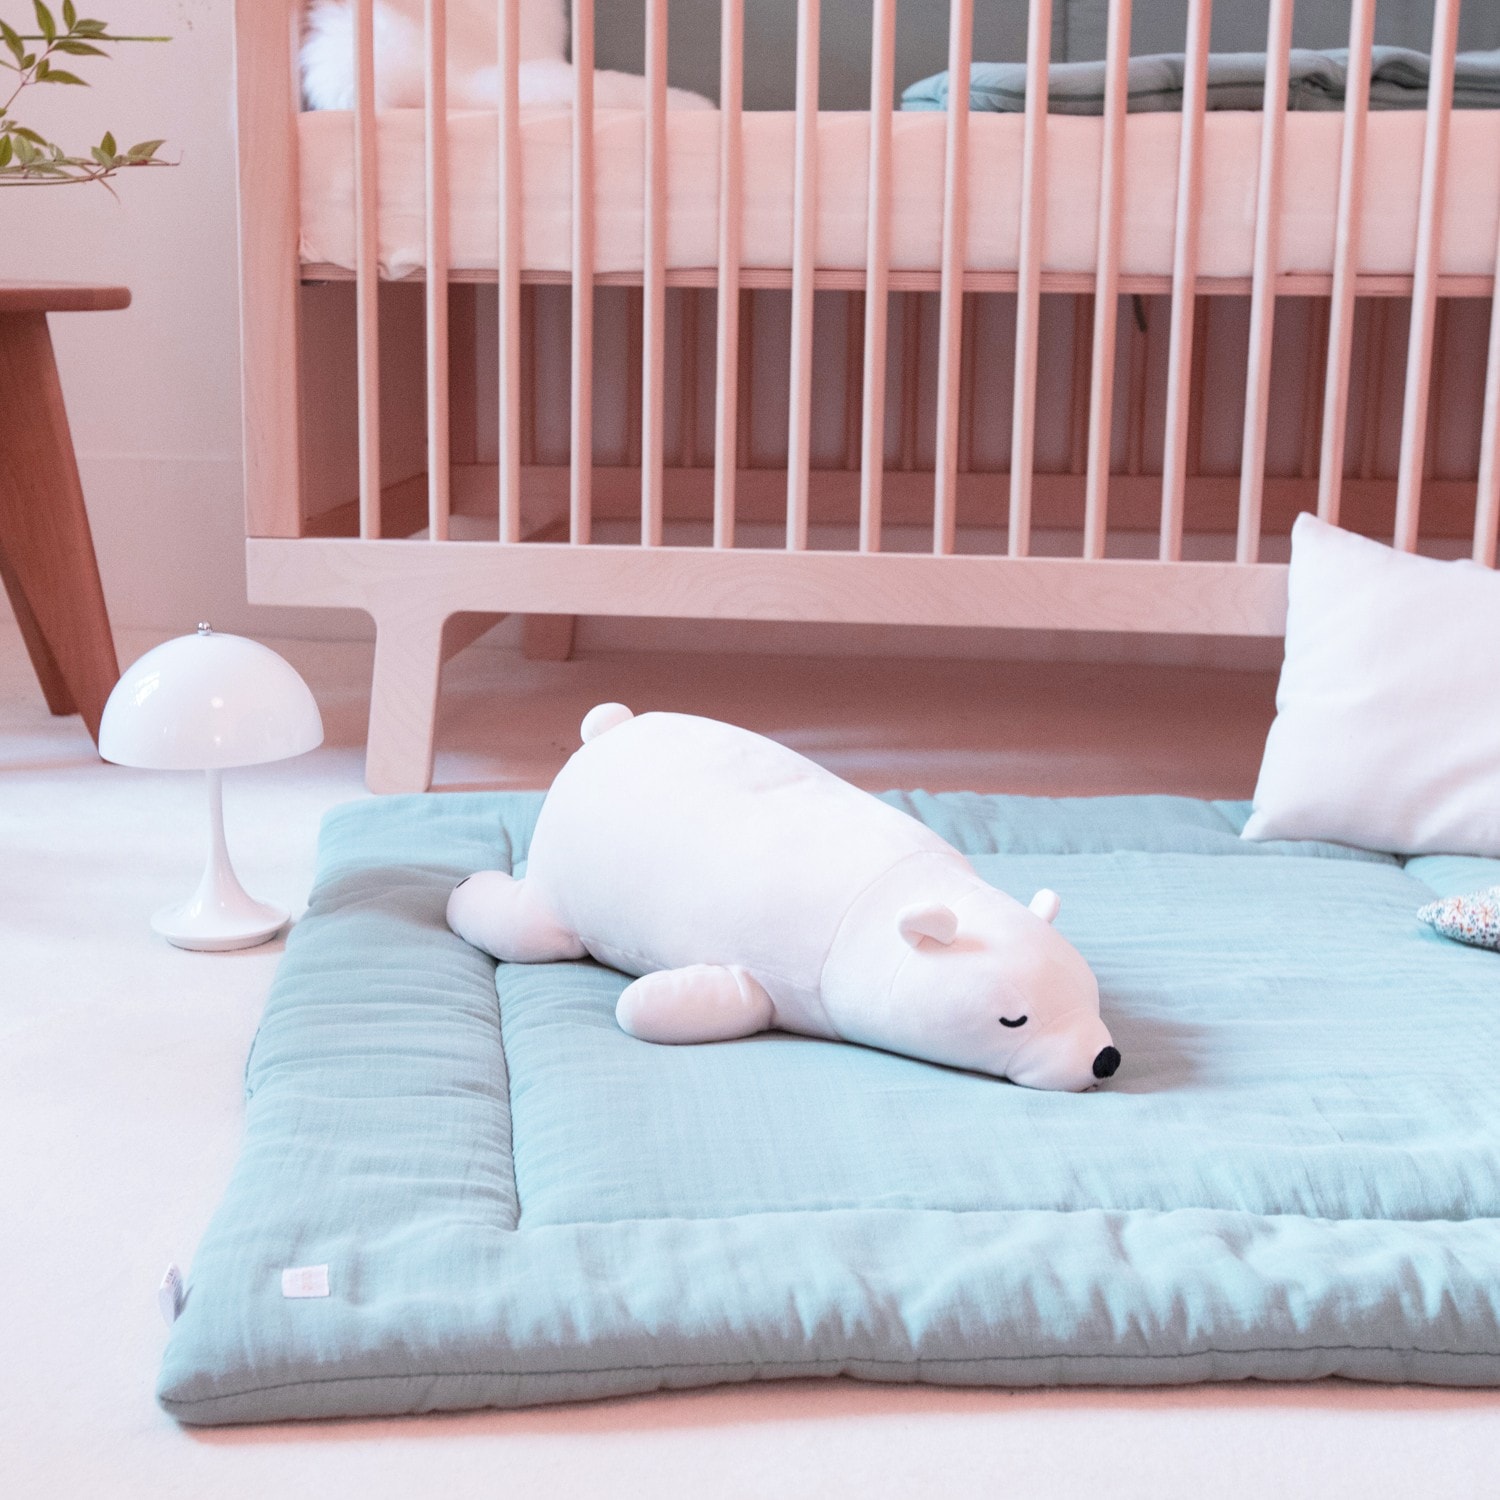 Tapis montessori pour bébé en coton bio - Matelas de sol